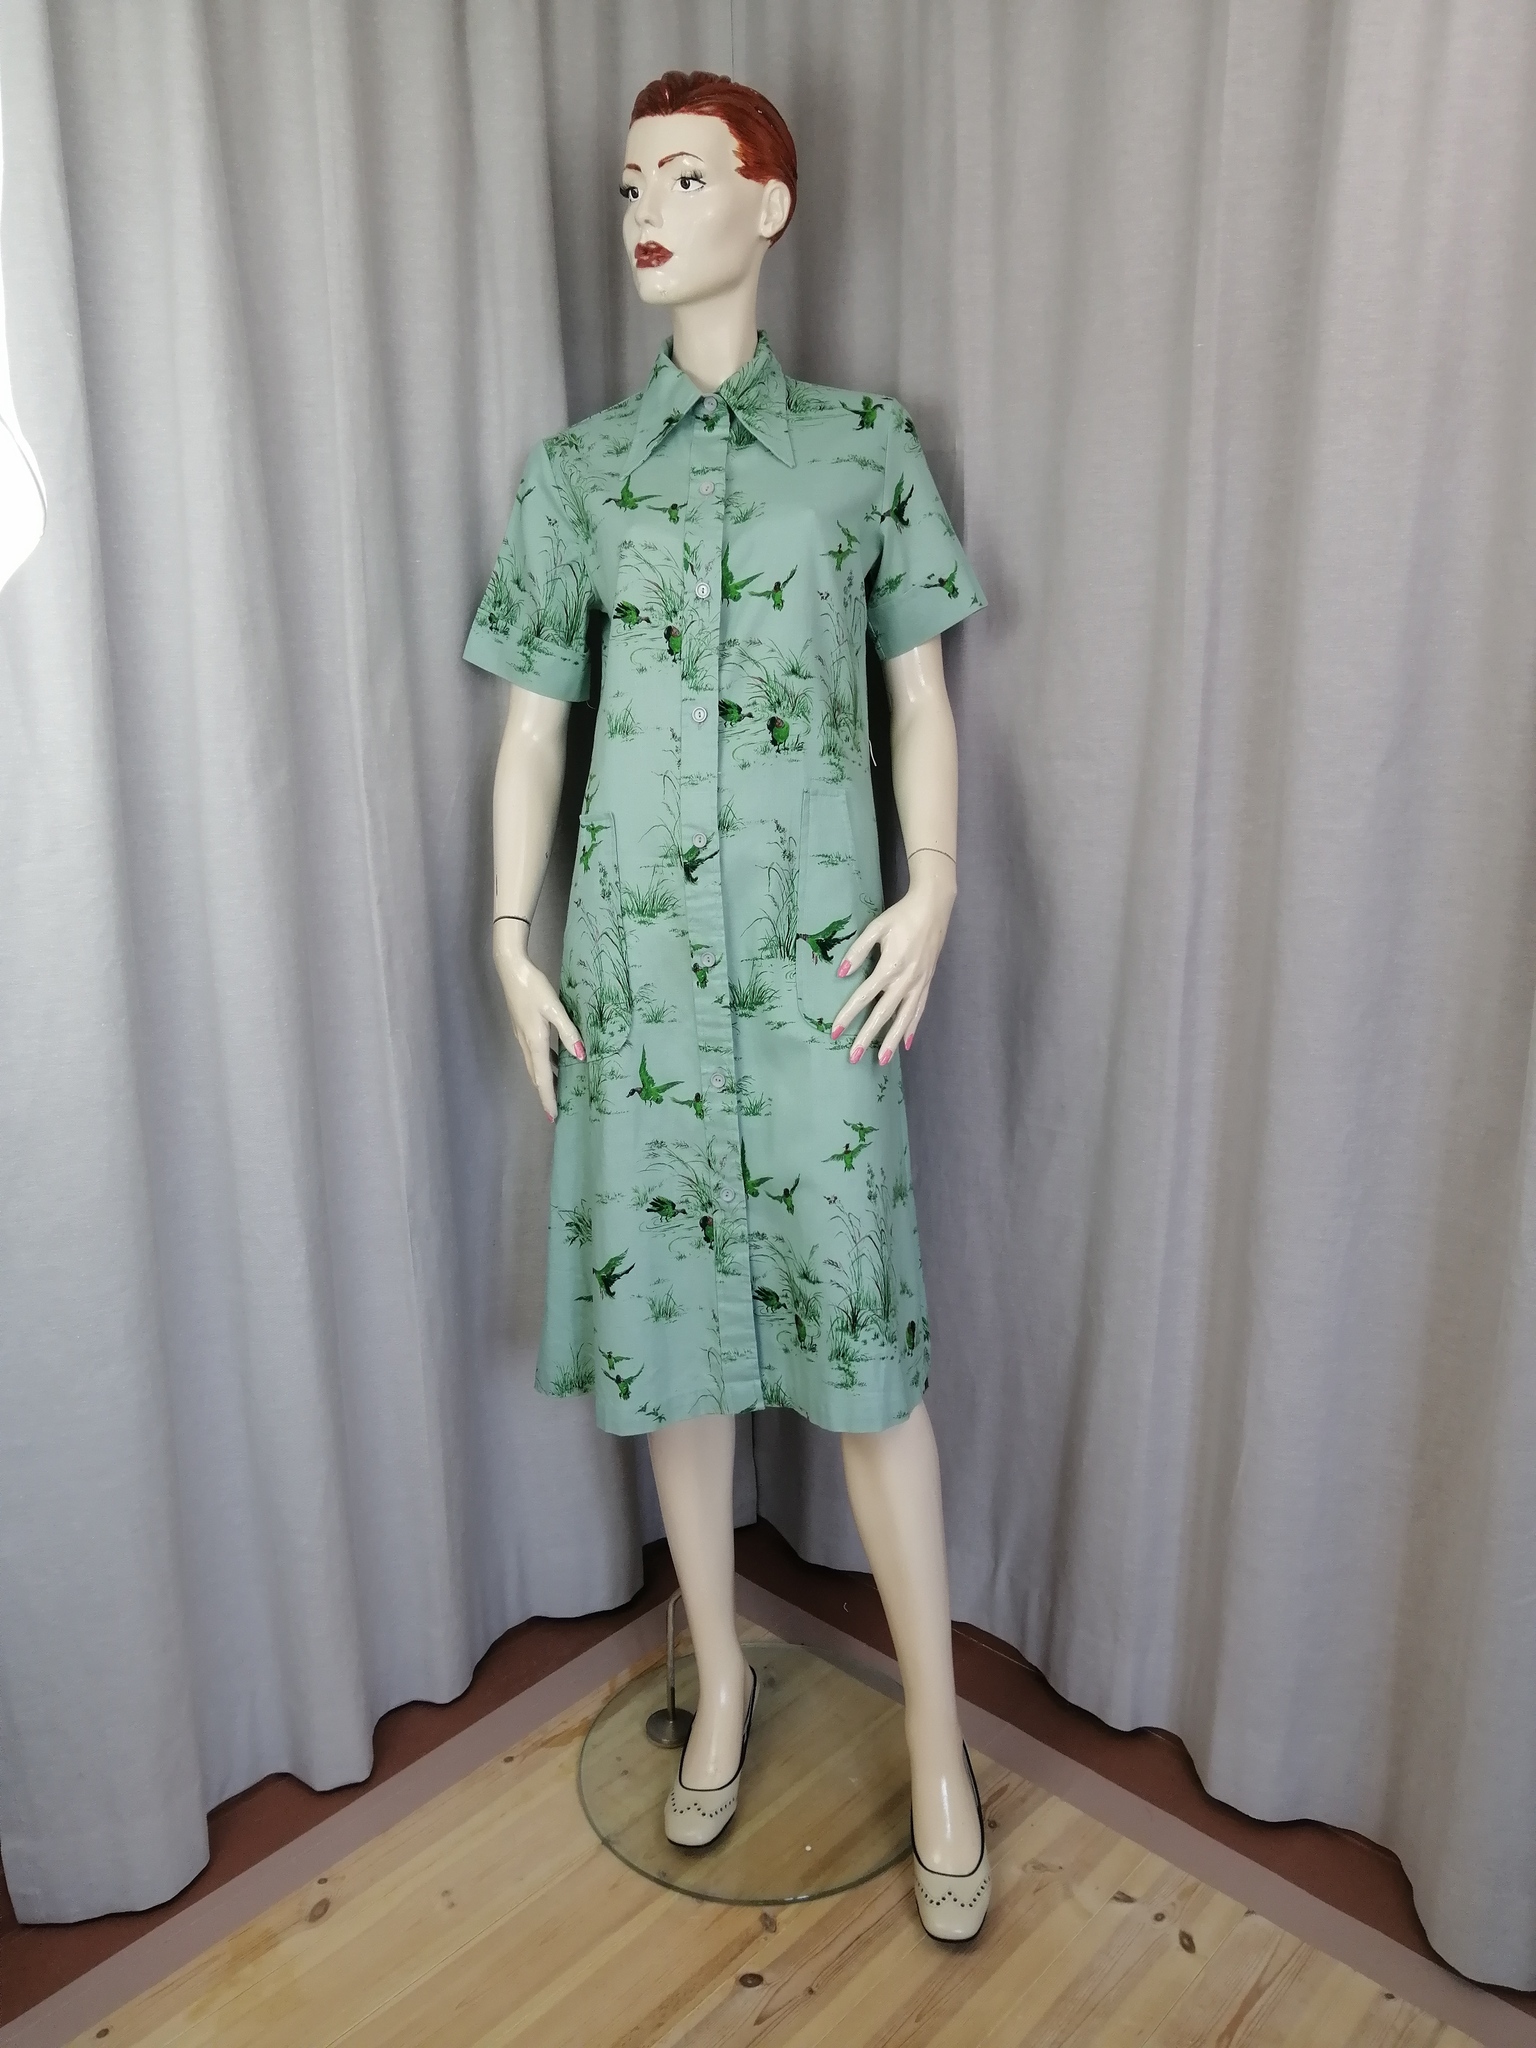 Vintage grön klänning fantatstiskt mönster fåglar i gräs, kort ärm fickor 70-tal